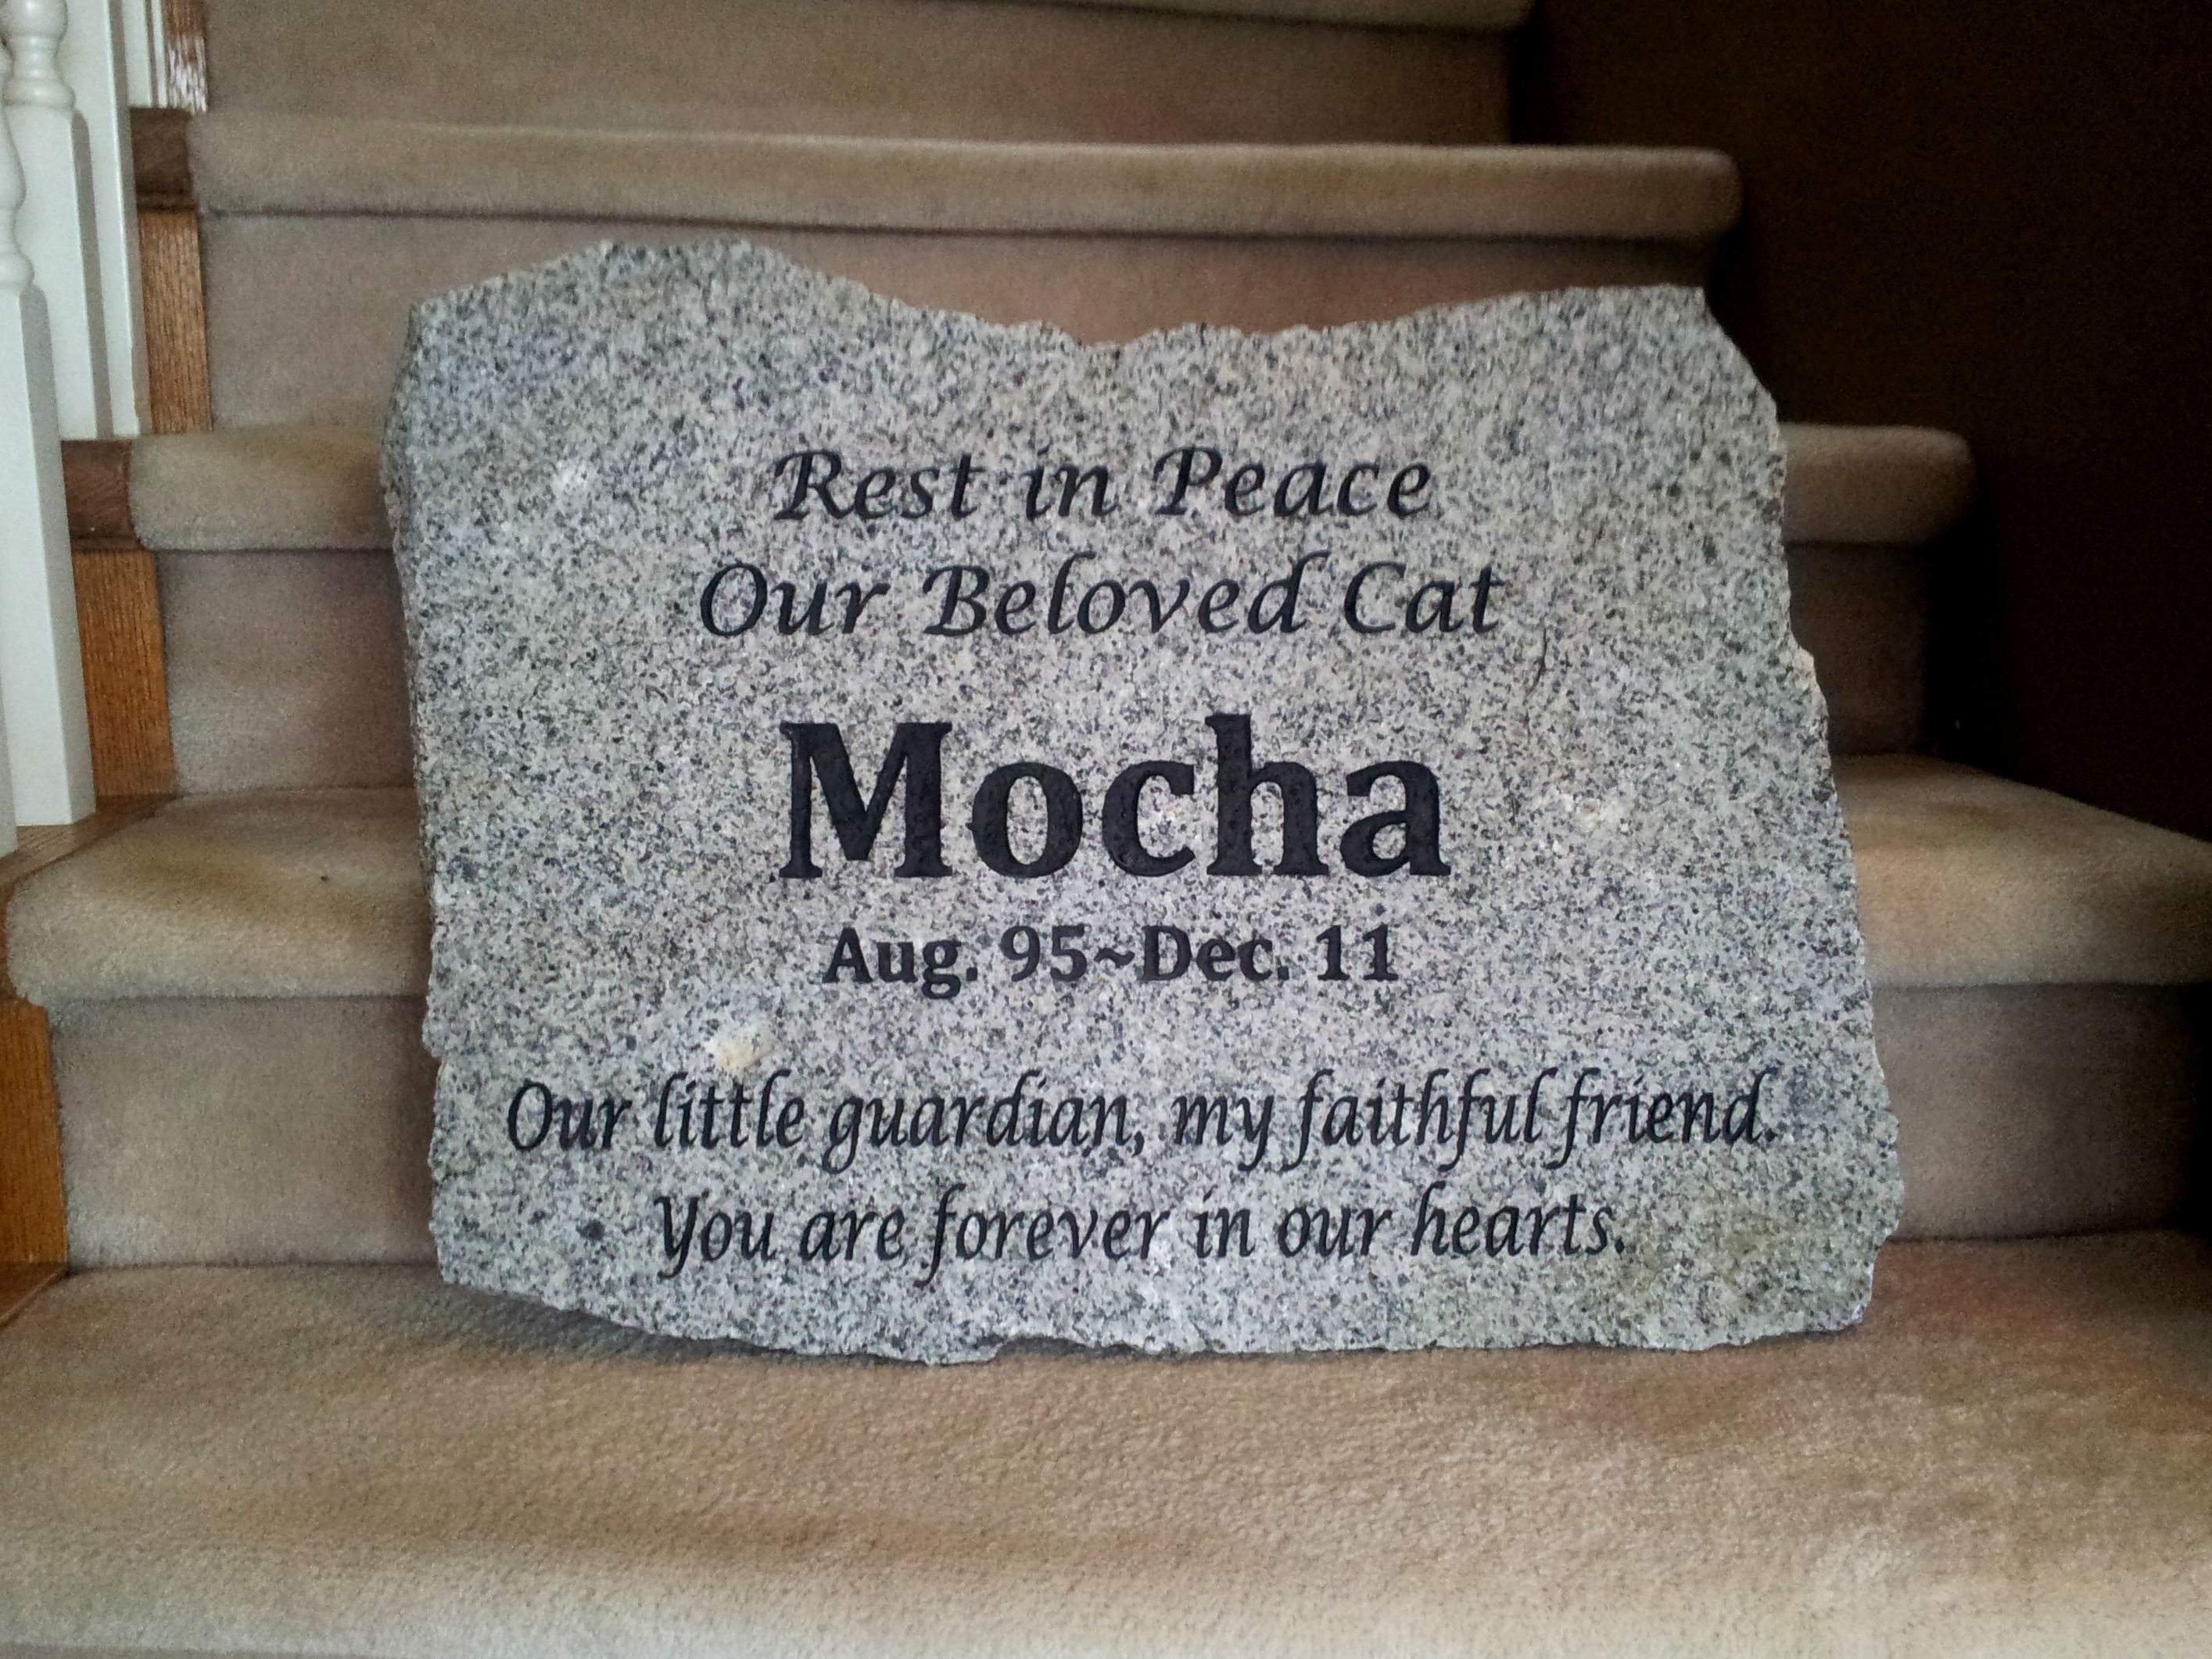 Our beloved cat - Mocha